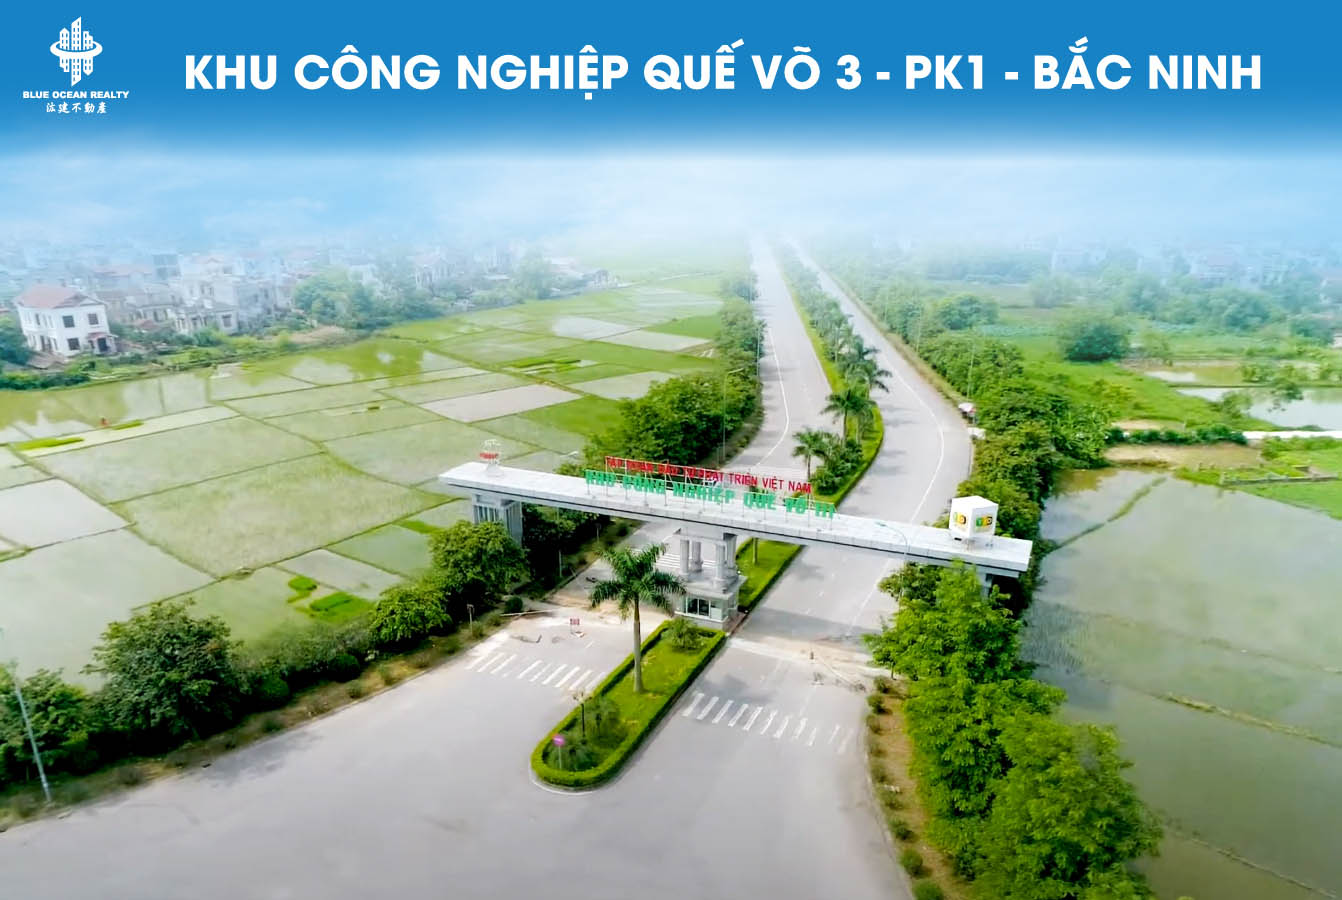 Khu công nghiệp Quế Võ-3 PK1 - Bắc Ninh